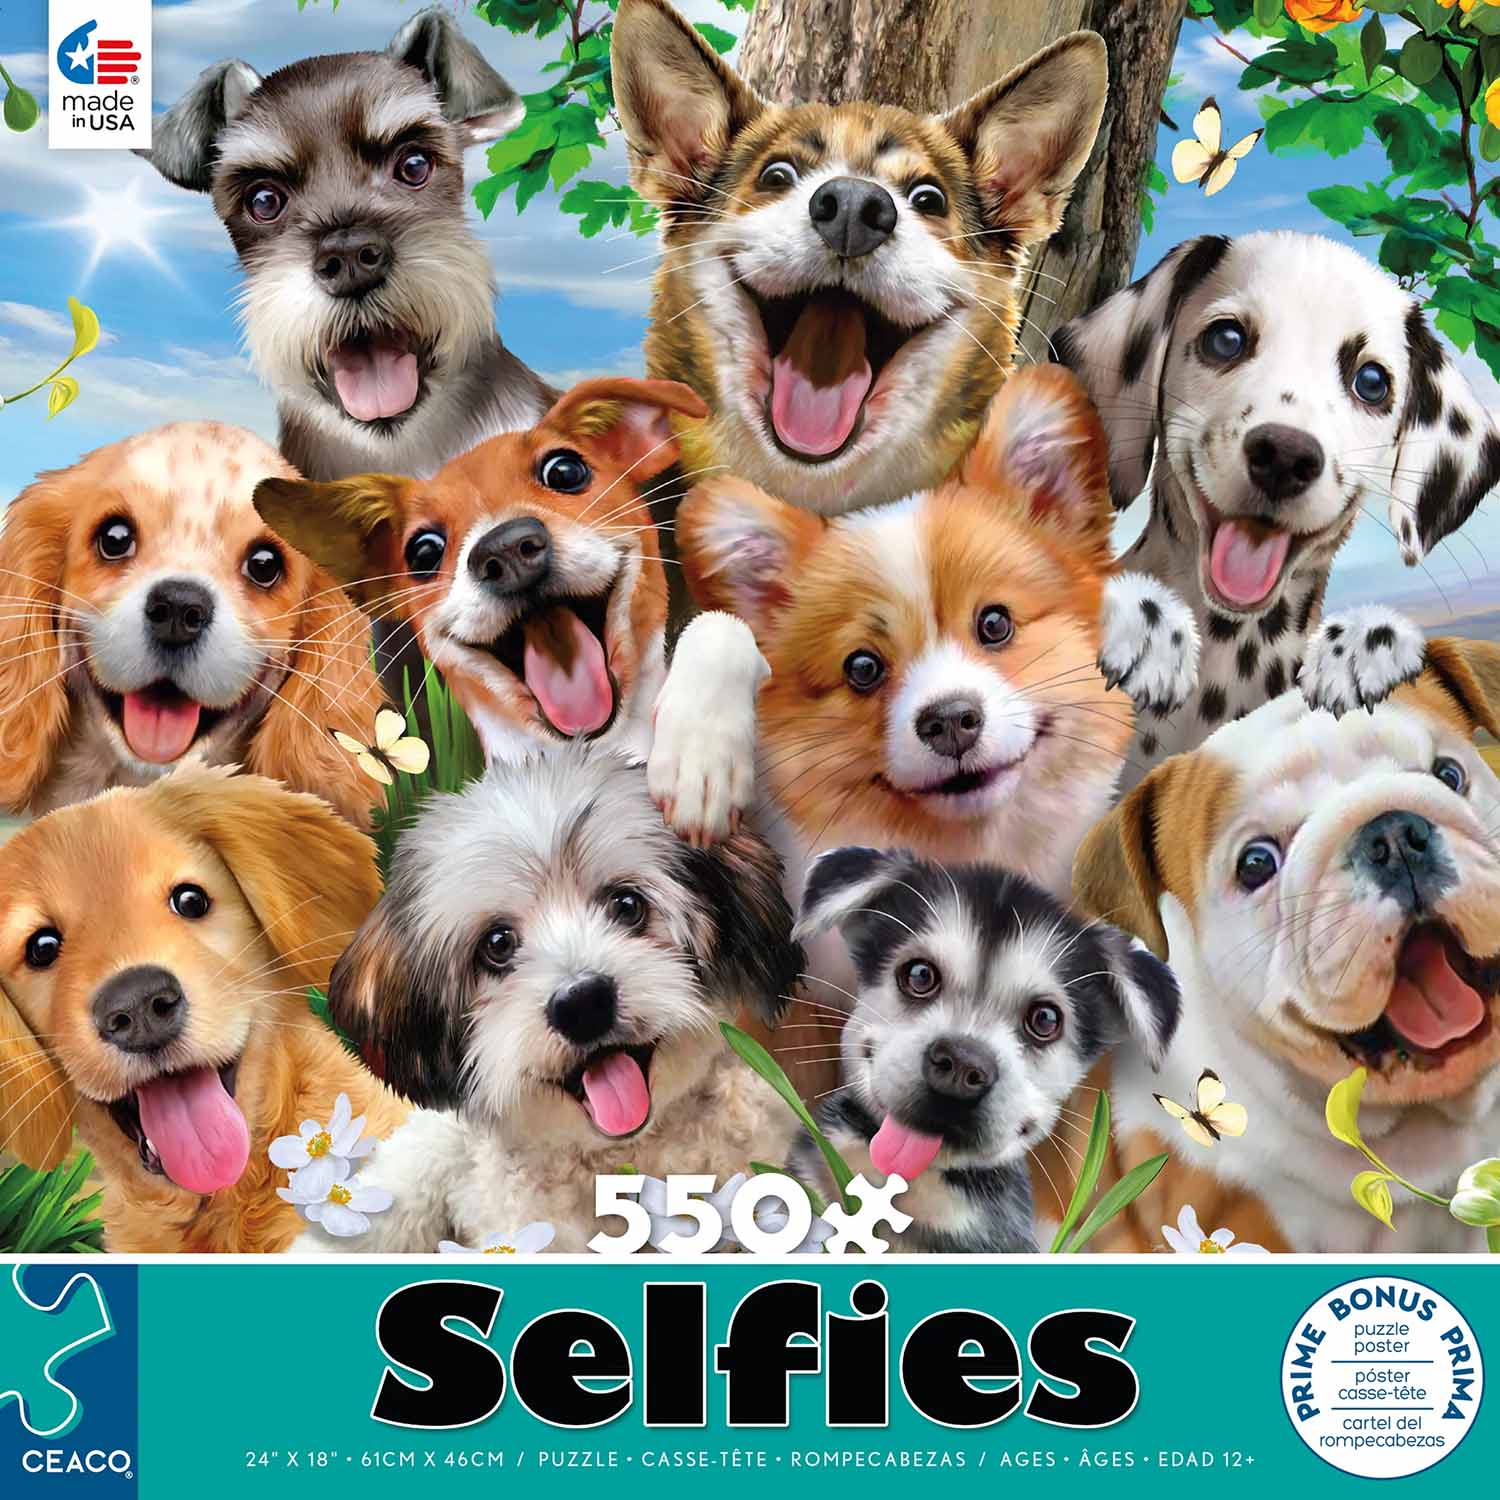 Selfies - Selfie Pups